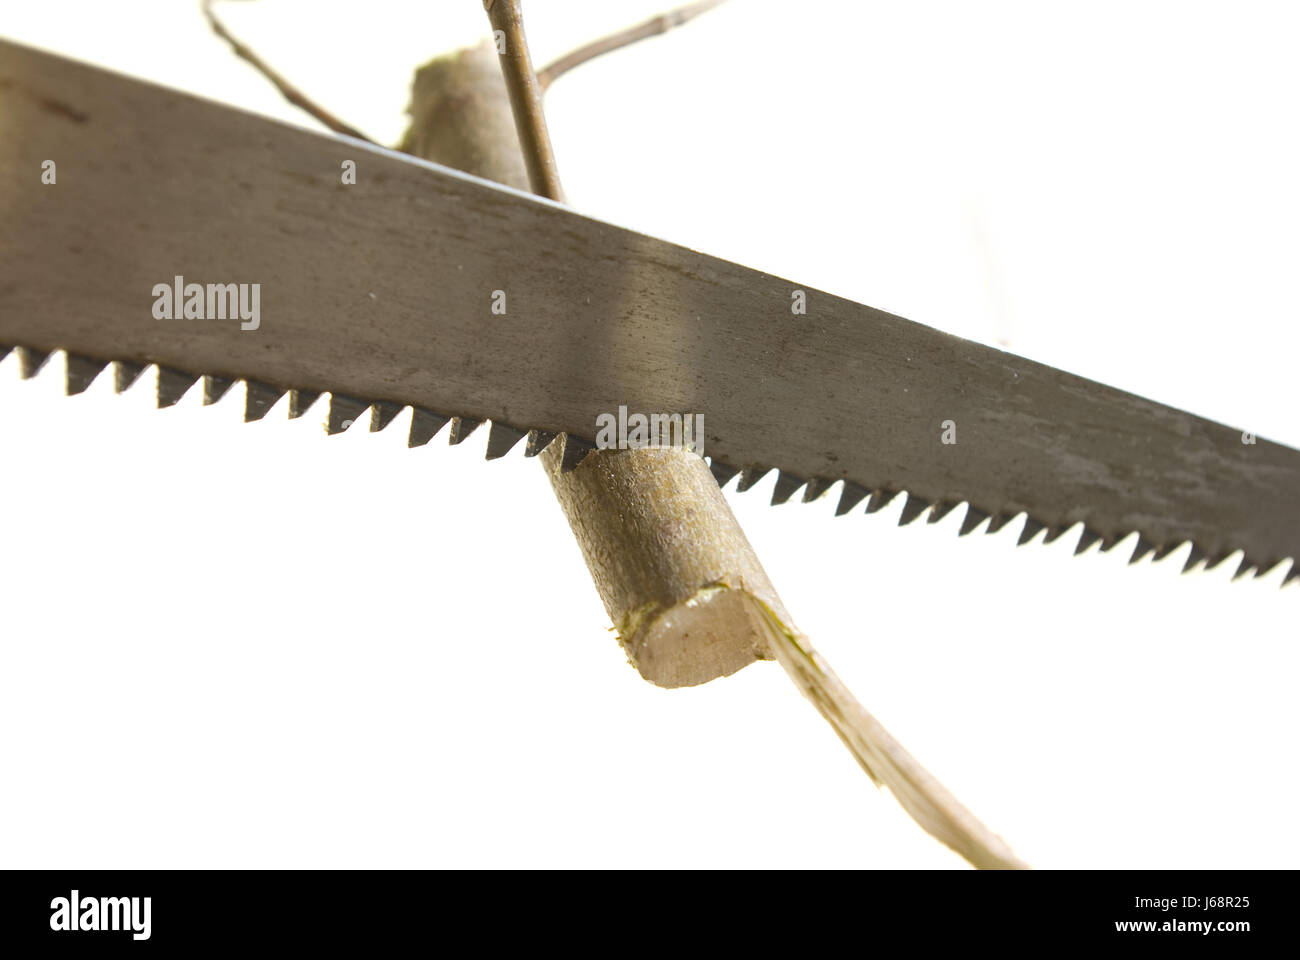 isolierte Werkzeuge sah Schnittfuge Gadget Hintergrund Scheune schöne Klinge Board Bogen bauen Stockfoto